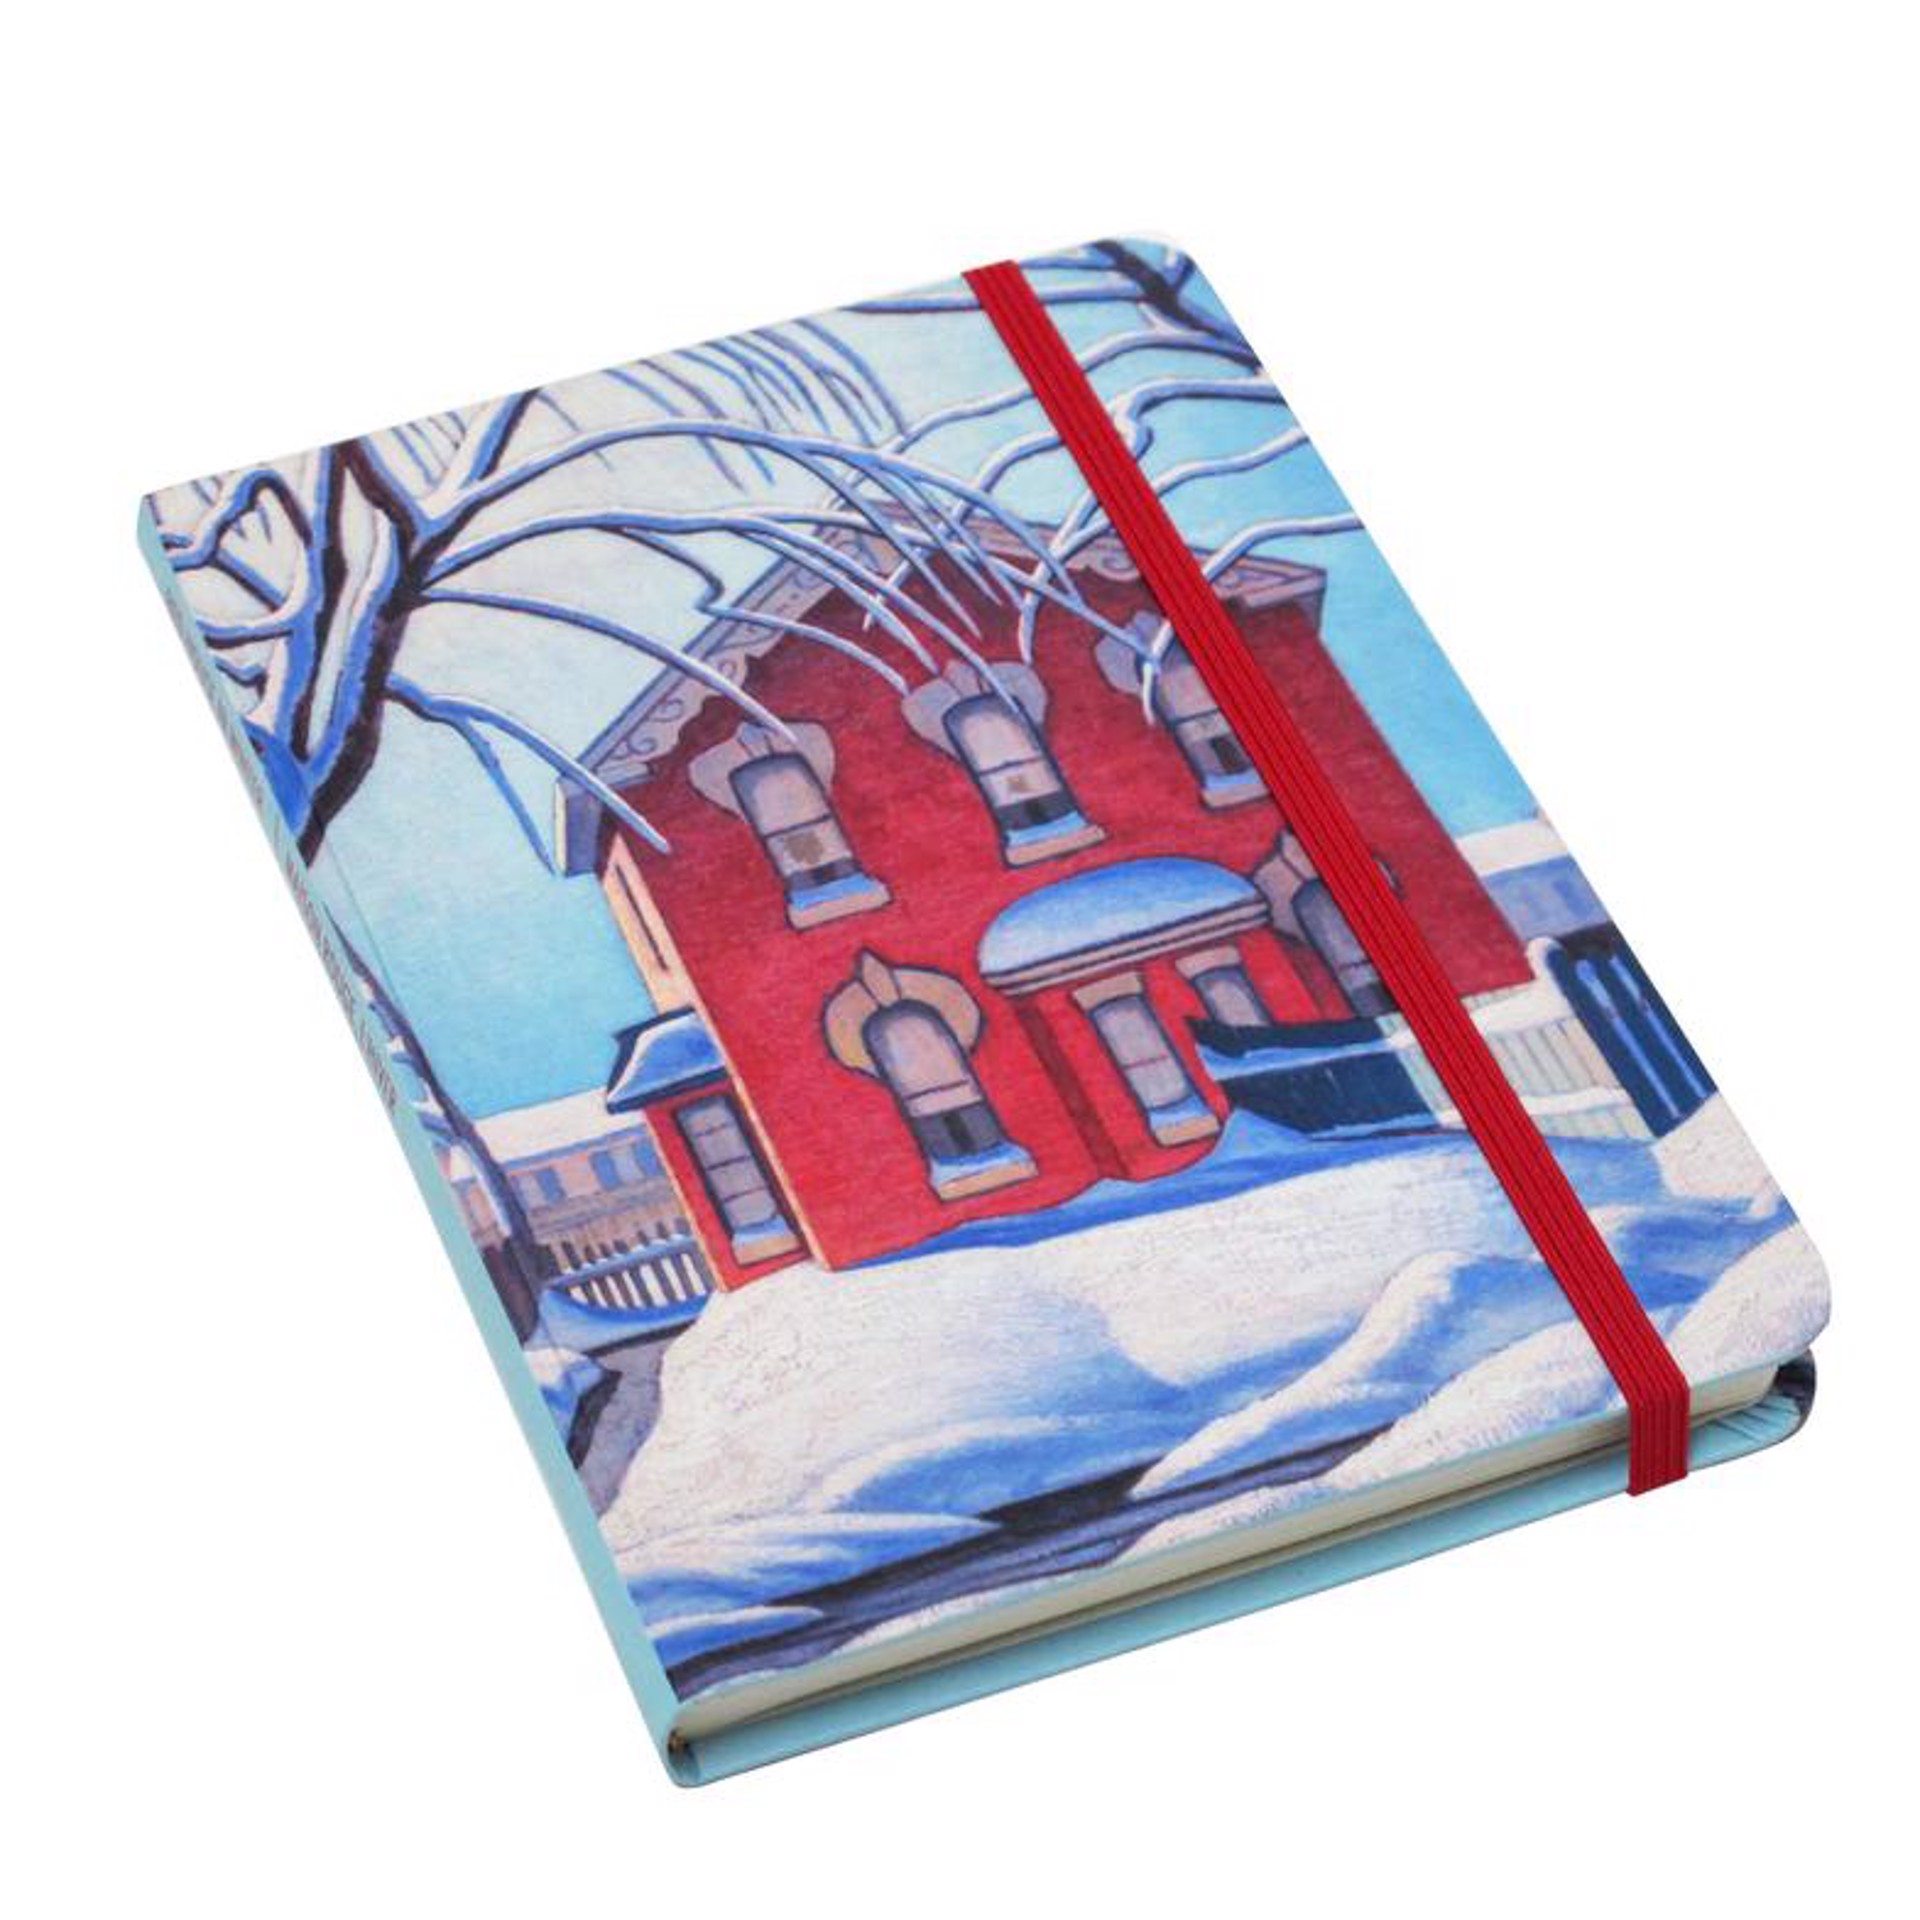 Red House in Winter Journal by Lawren Harris